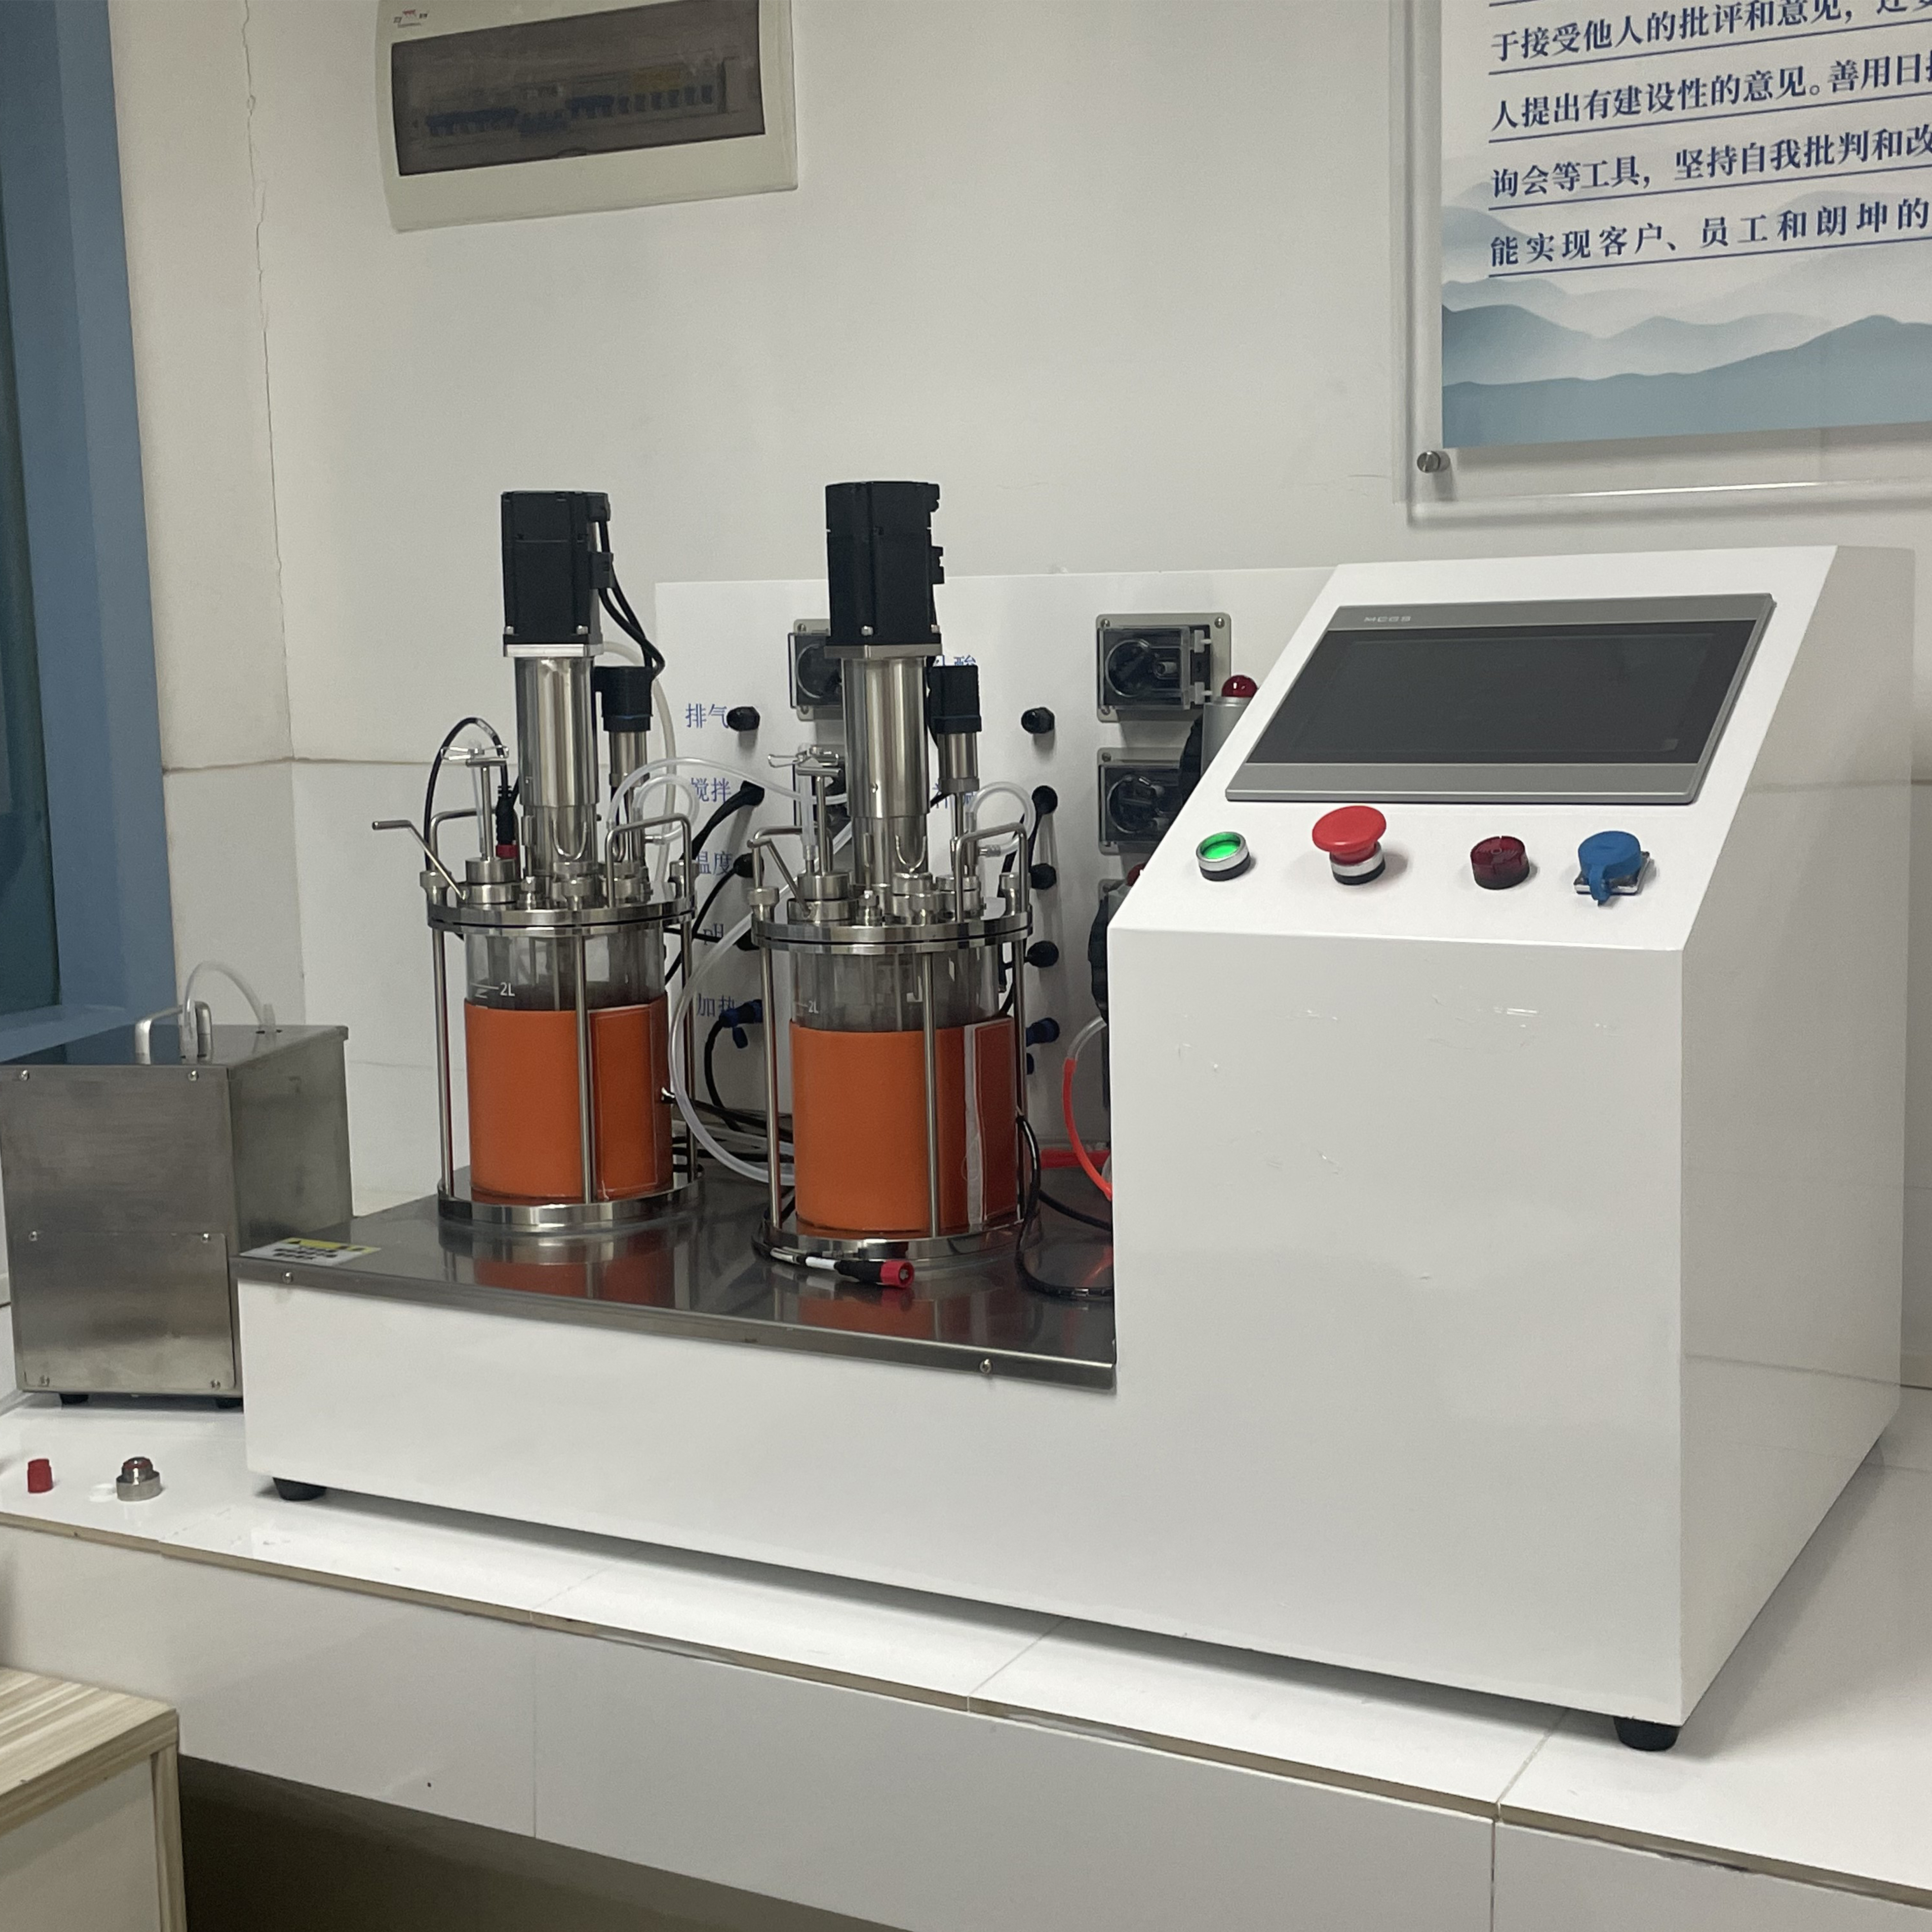 二联2L玻璃发酵罐 机械搅拌 微生物发酵 北京发酵